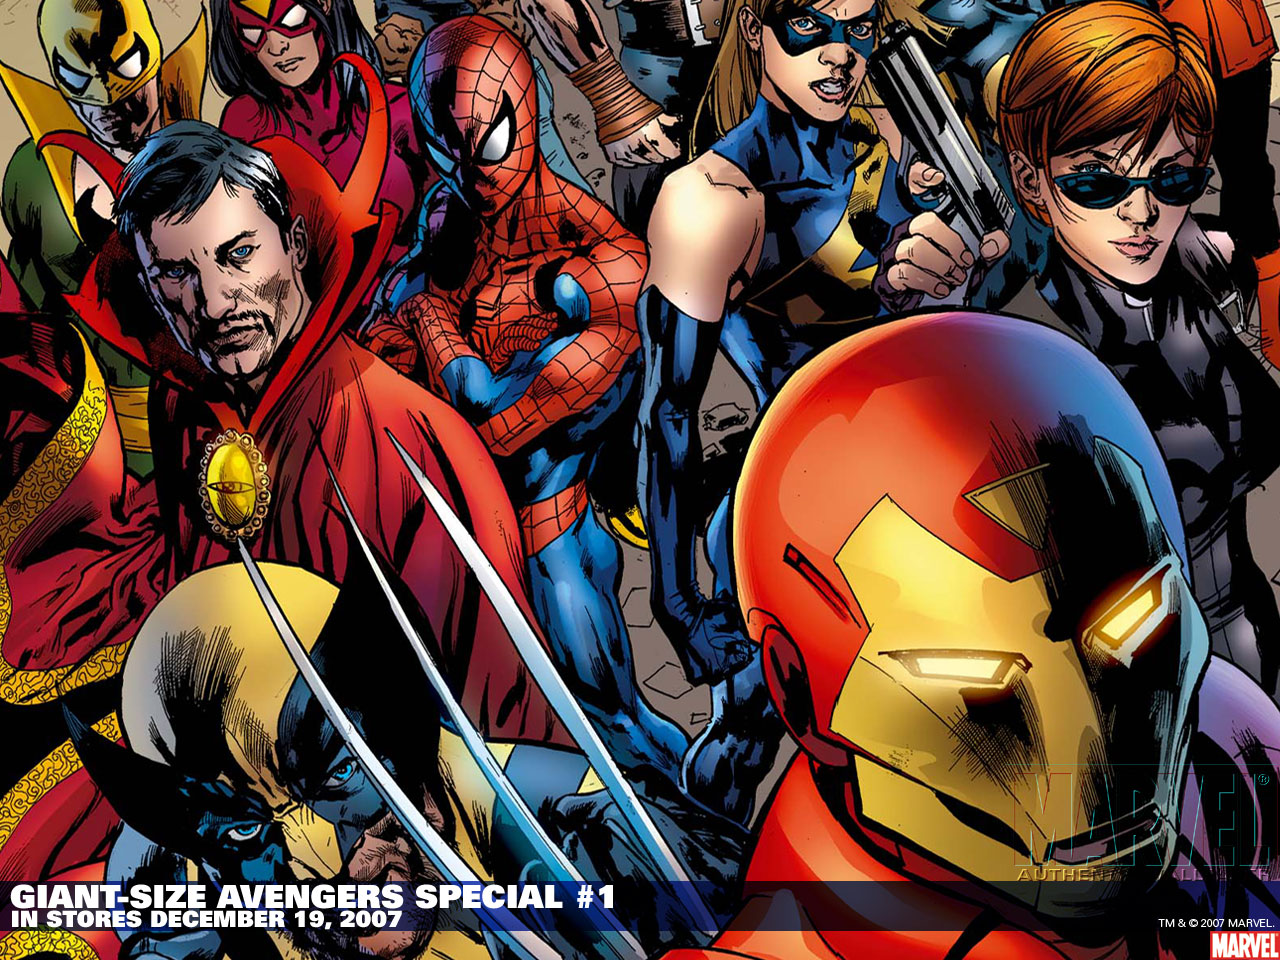 imagineanddo Wallpapers de Superheroes de Marvel